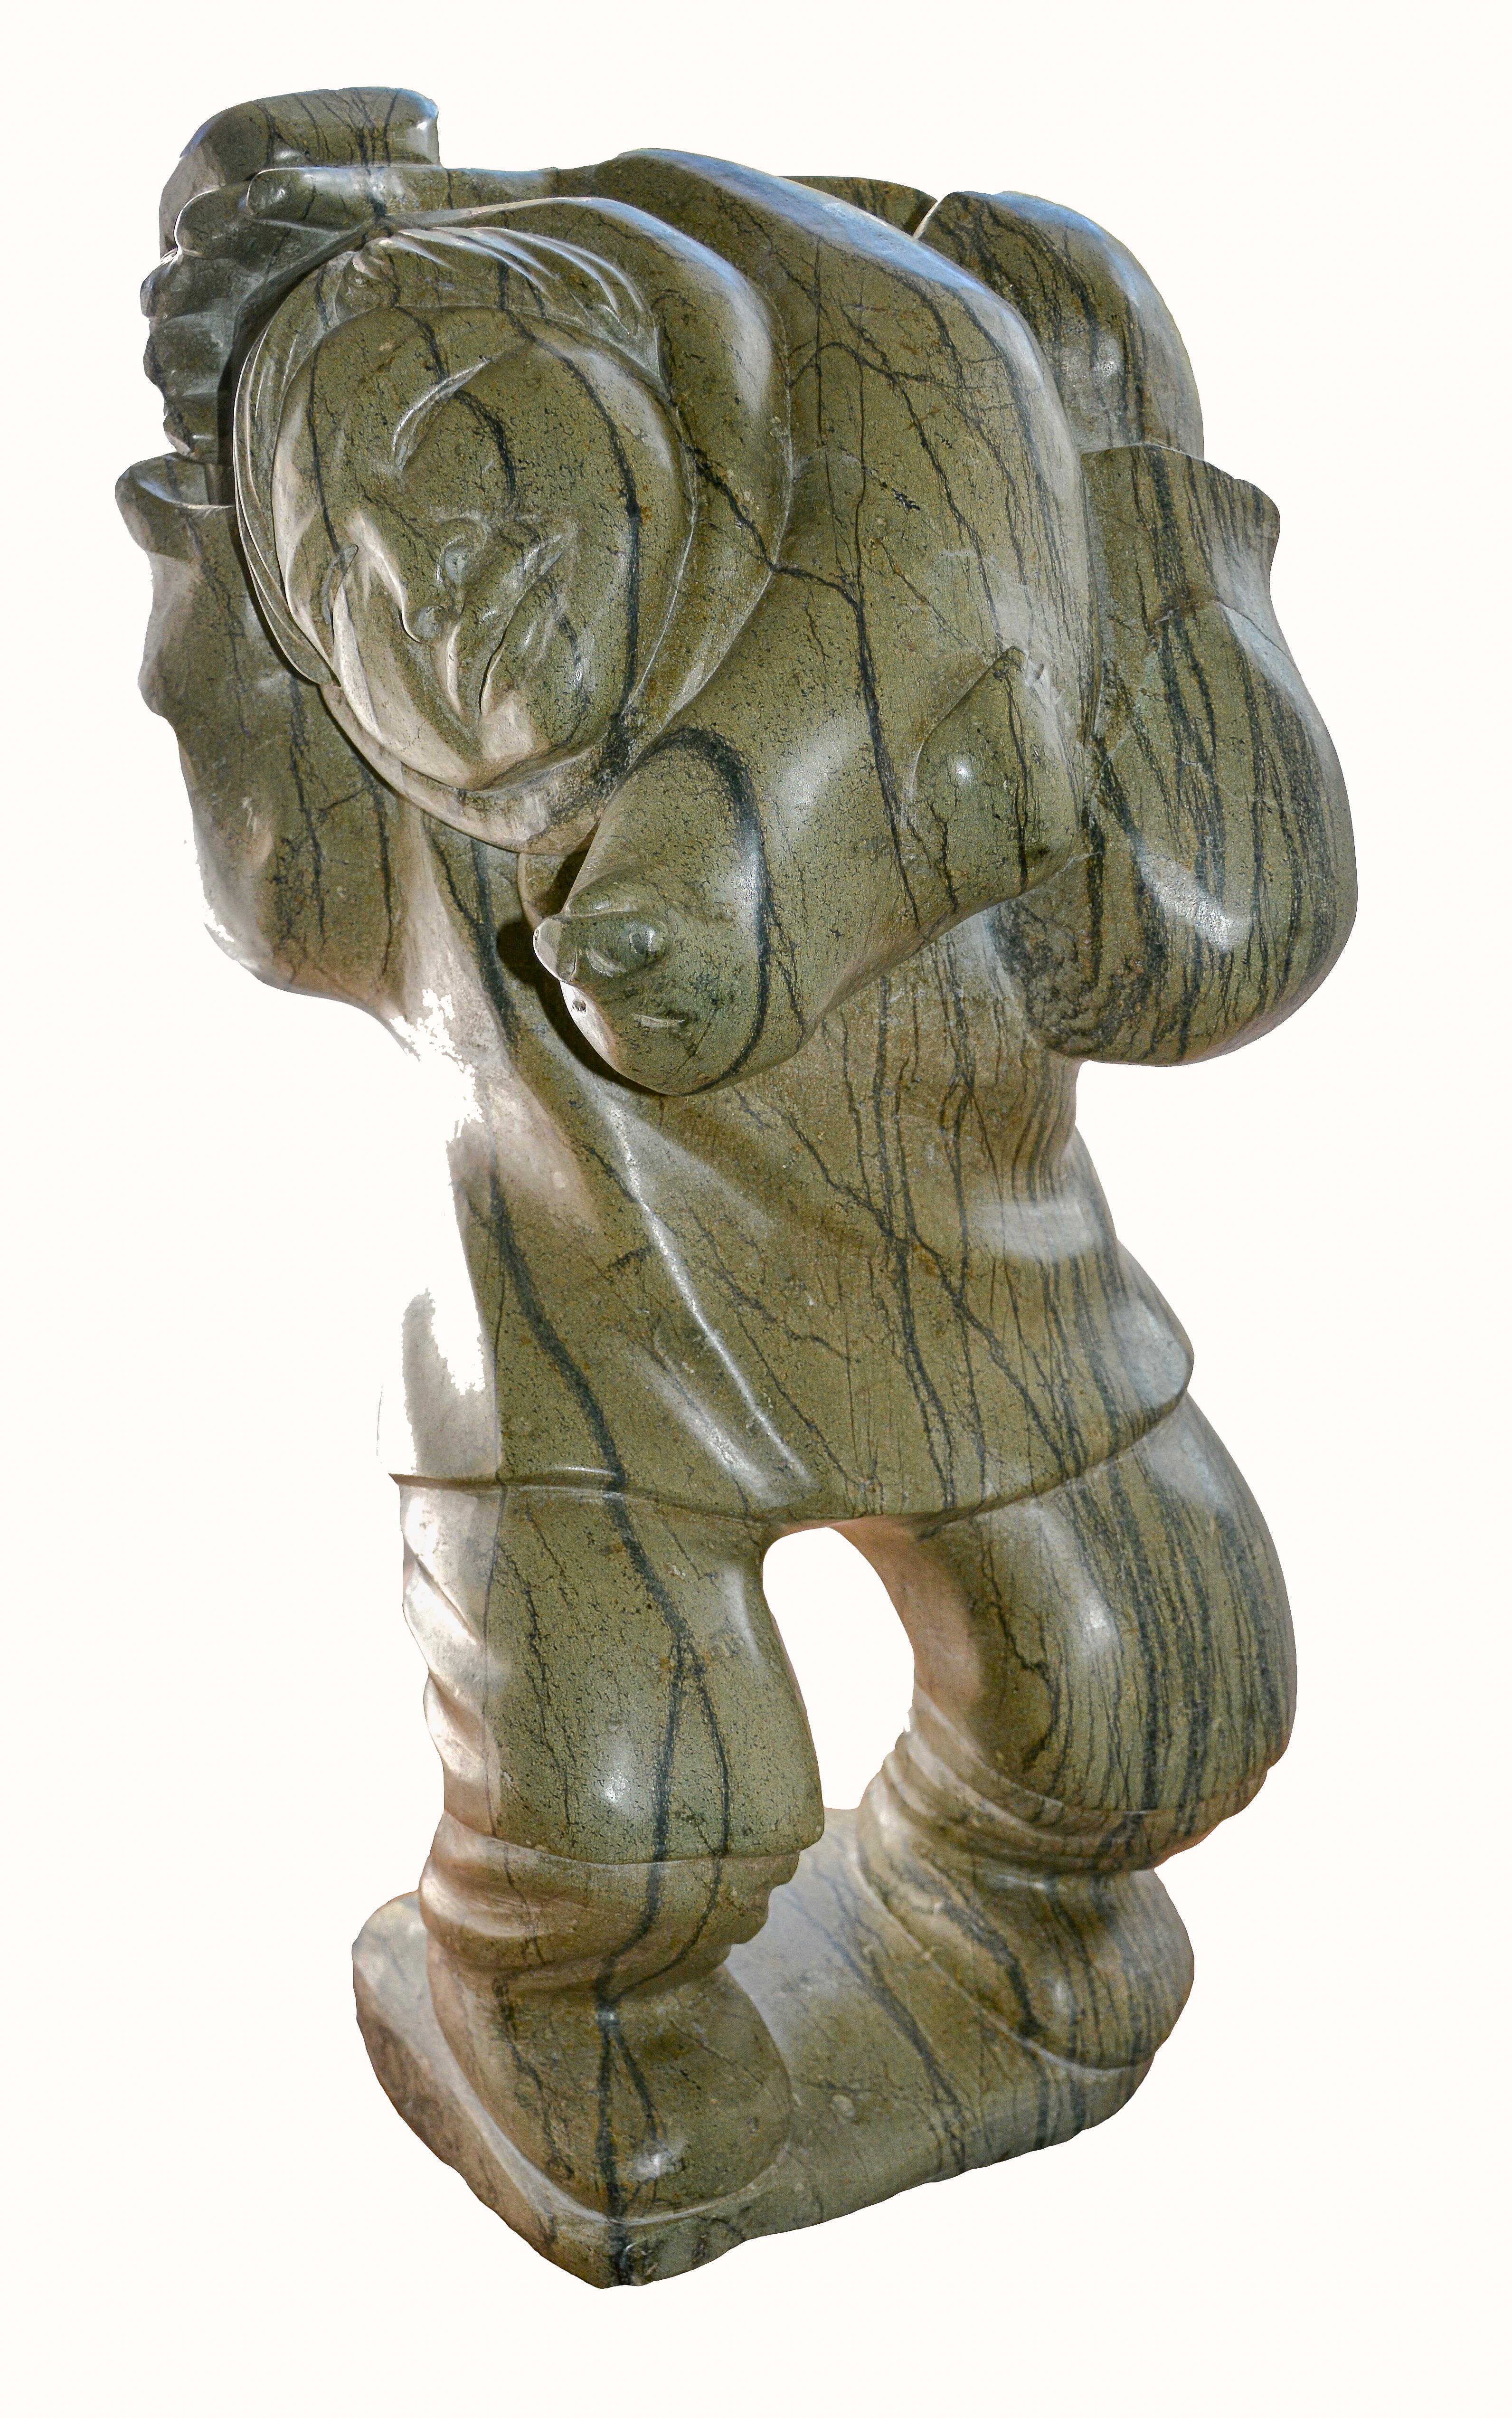 Hunter et Seal, 1972
Kiawak Ashoona (1933 - 2014) O.C., R.C.A.
Cape Dorset
Serpentine

Il s'agit d'un magnifique exemple de l'œuvre de ce premier artiste de Cape Dorset. État d'origine impeccable.

Certaines des plus belles sculptures venues du nord